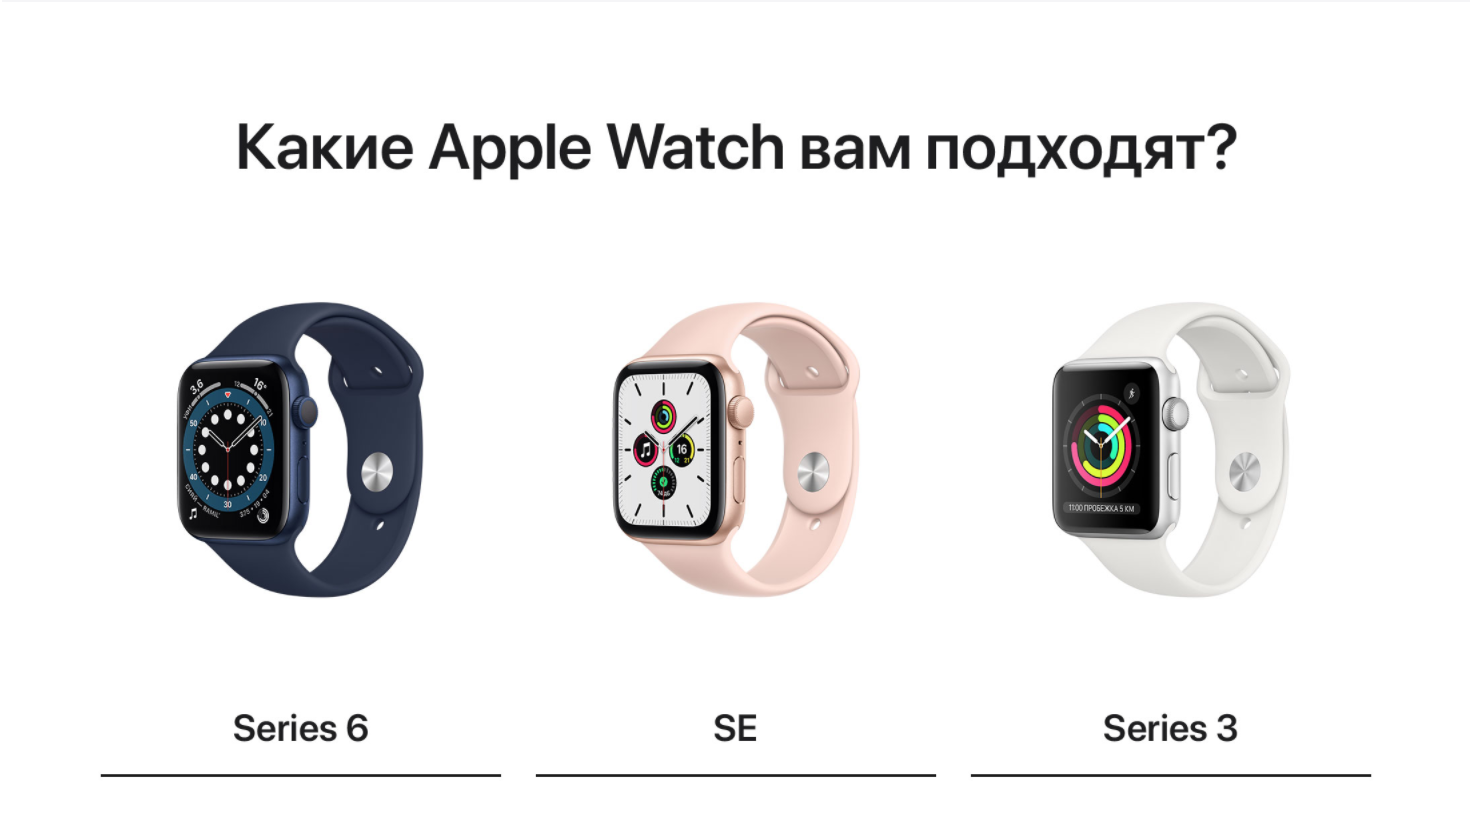 Apple watch edition — обзор технических характеристик, функций, отличия модели от других